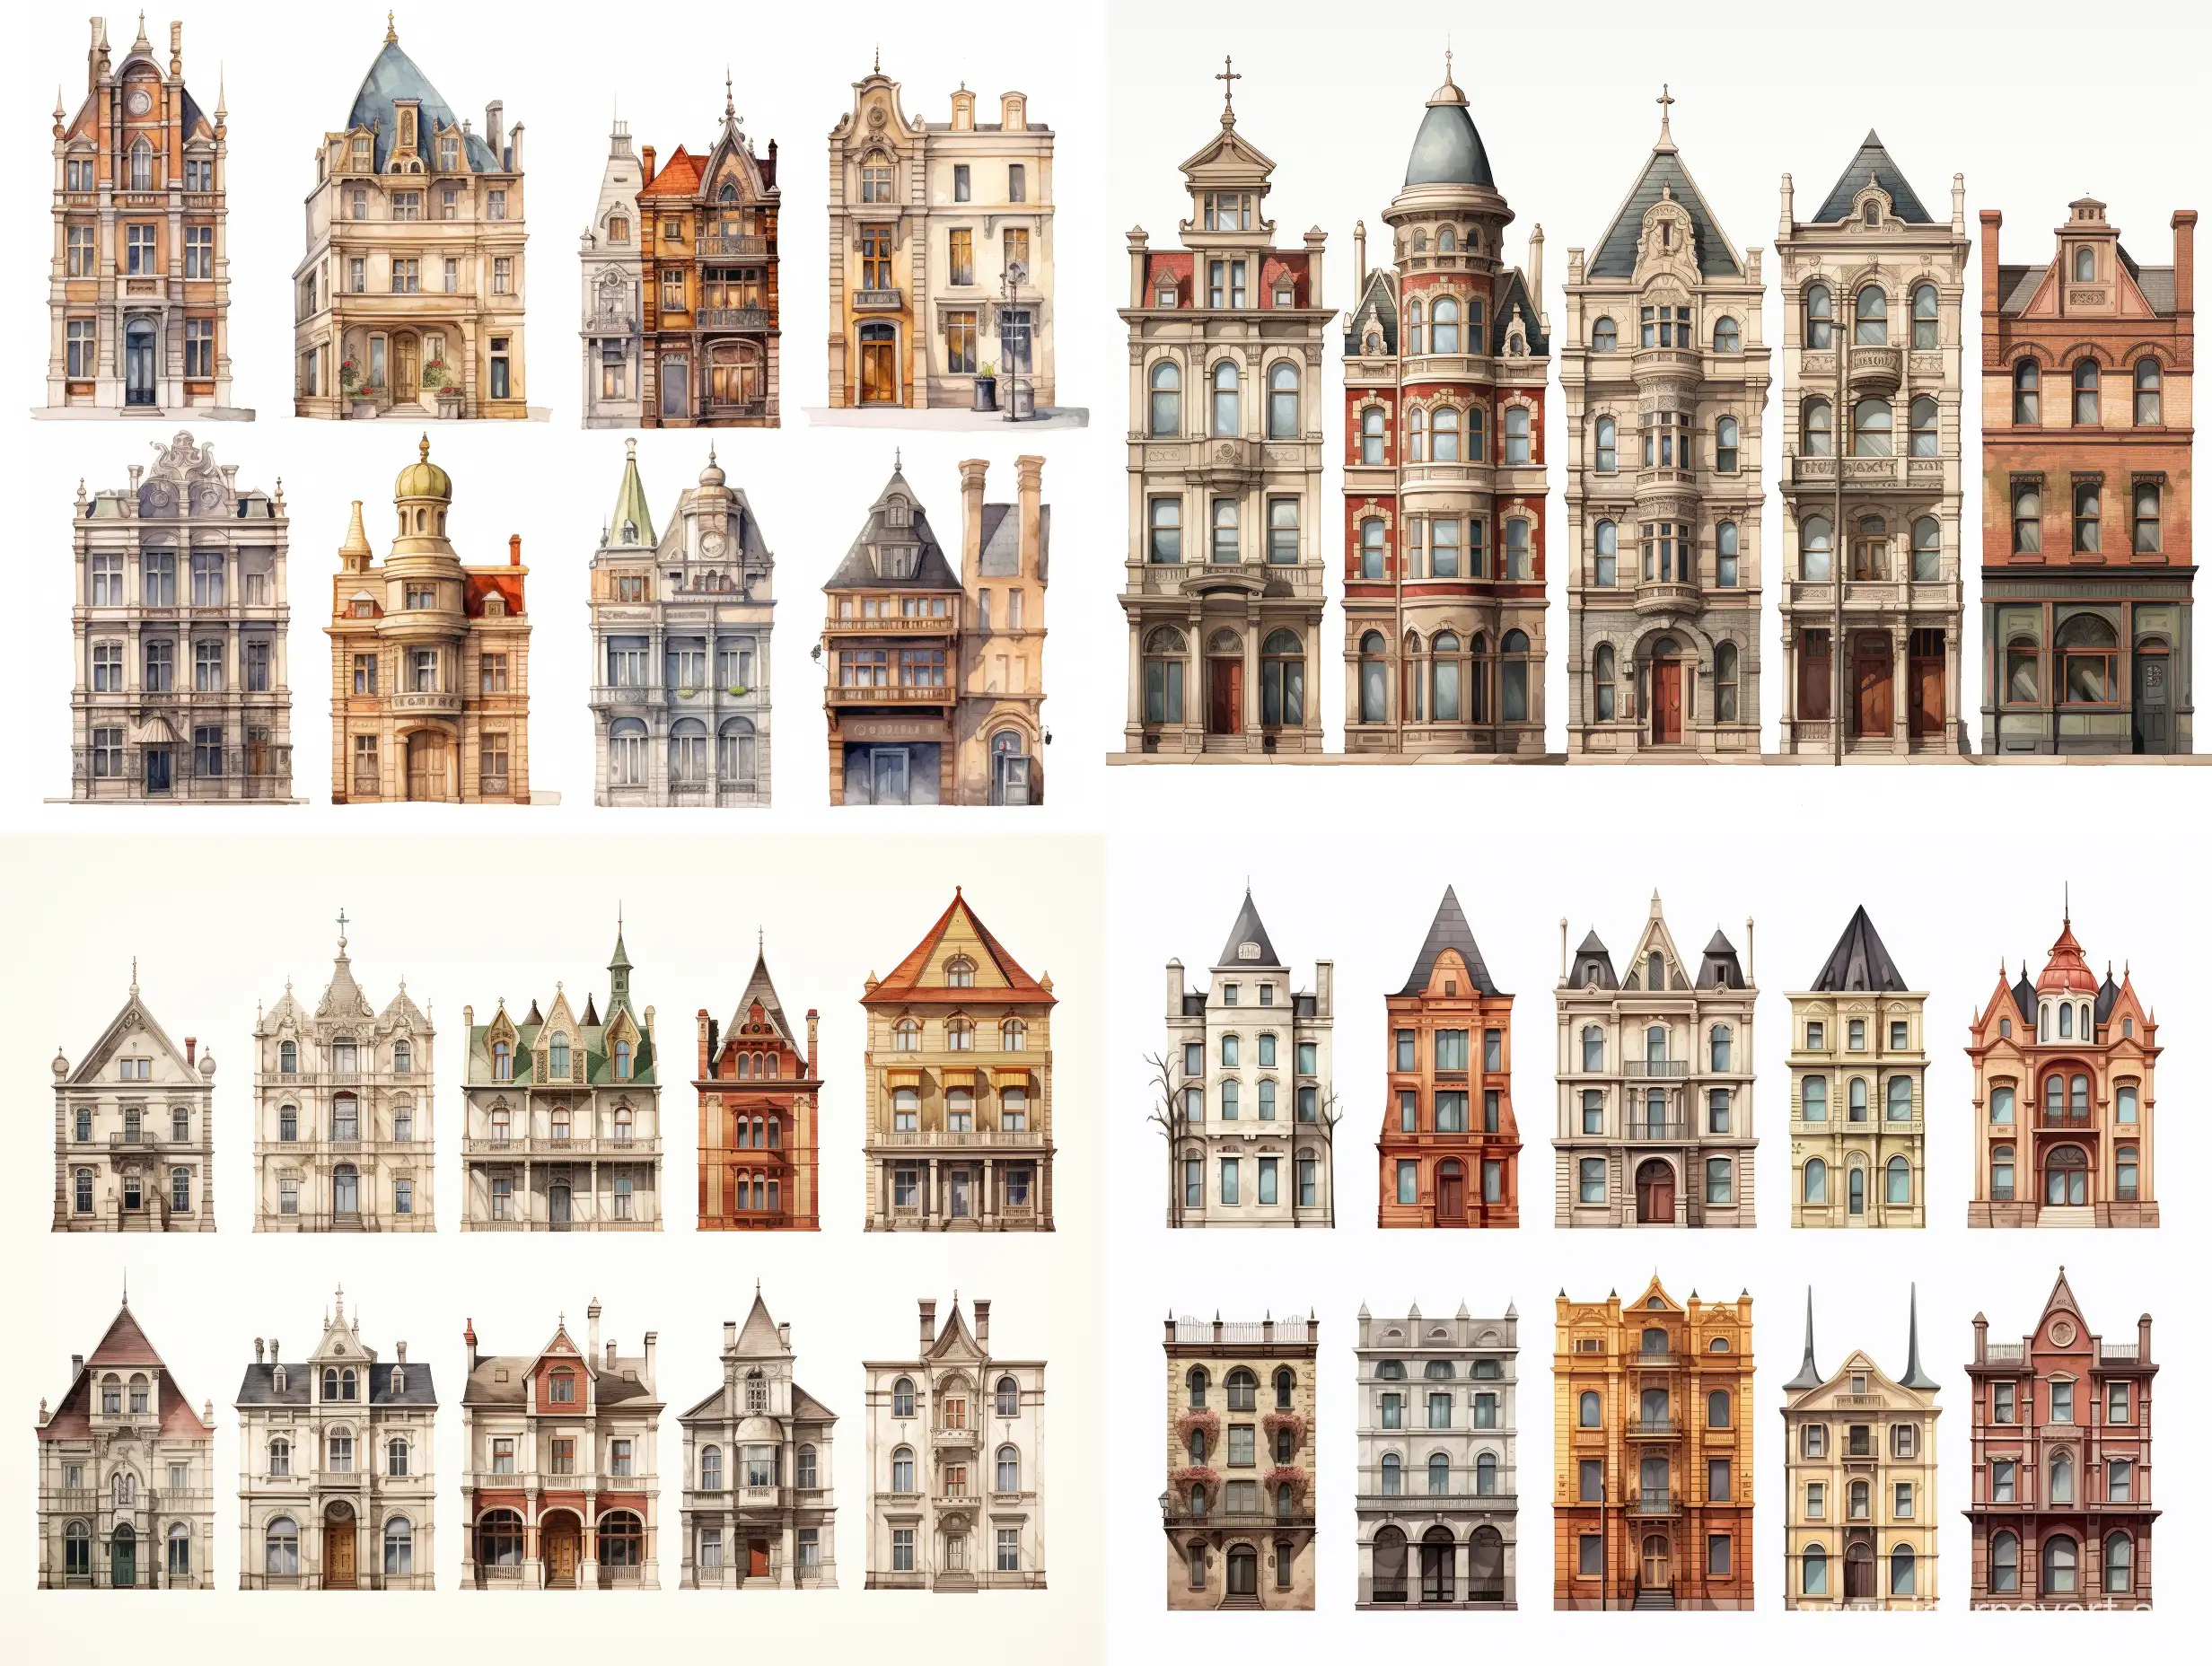 différents styles architecturaux : plusieurs bâtiments d'époques différentes